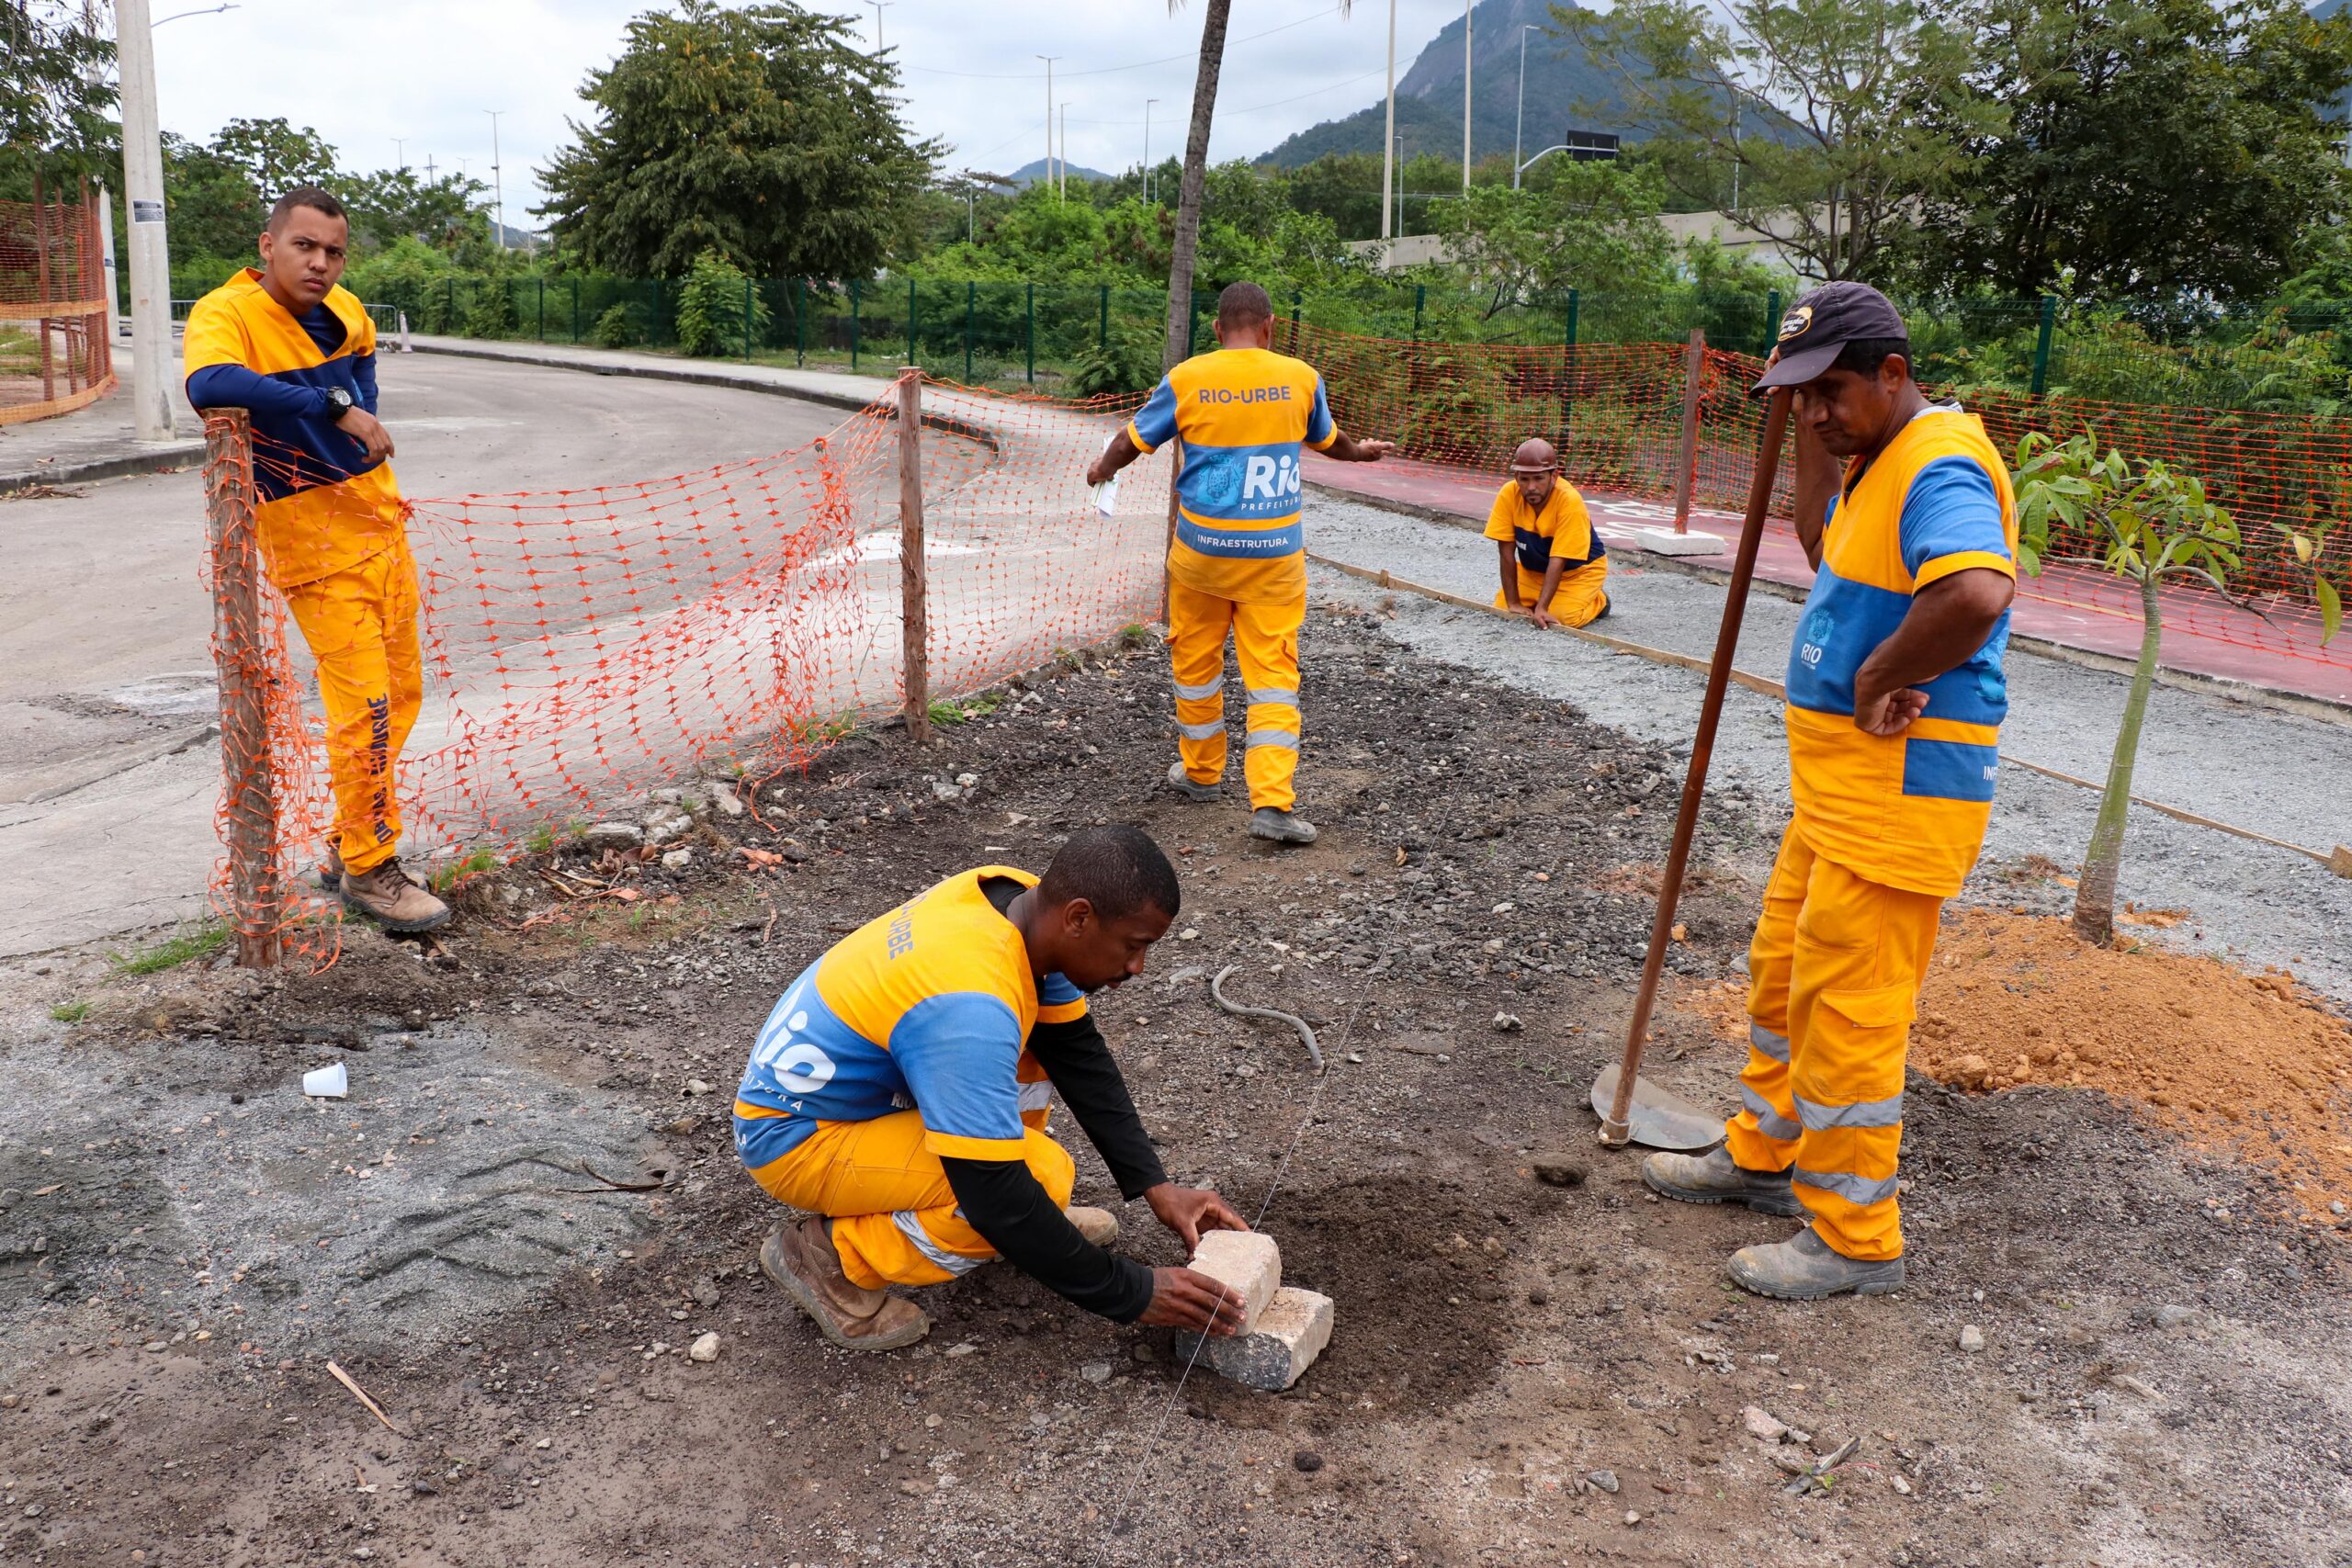 Funcionários da Rio-Urbe fazem medições para alinhar a construção da calçada. Foto: Alexandre Cerqueira